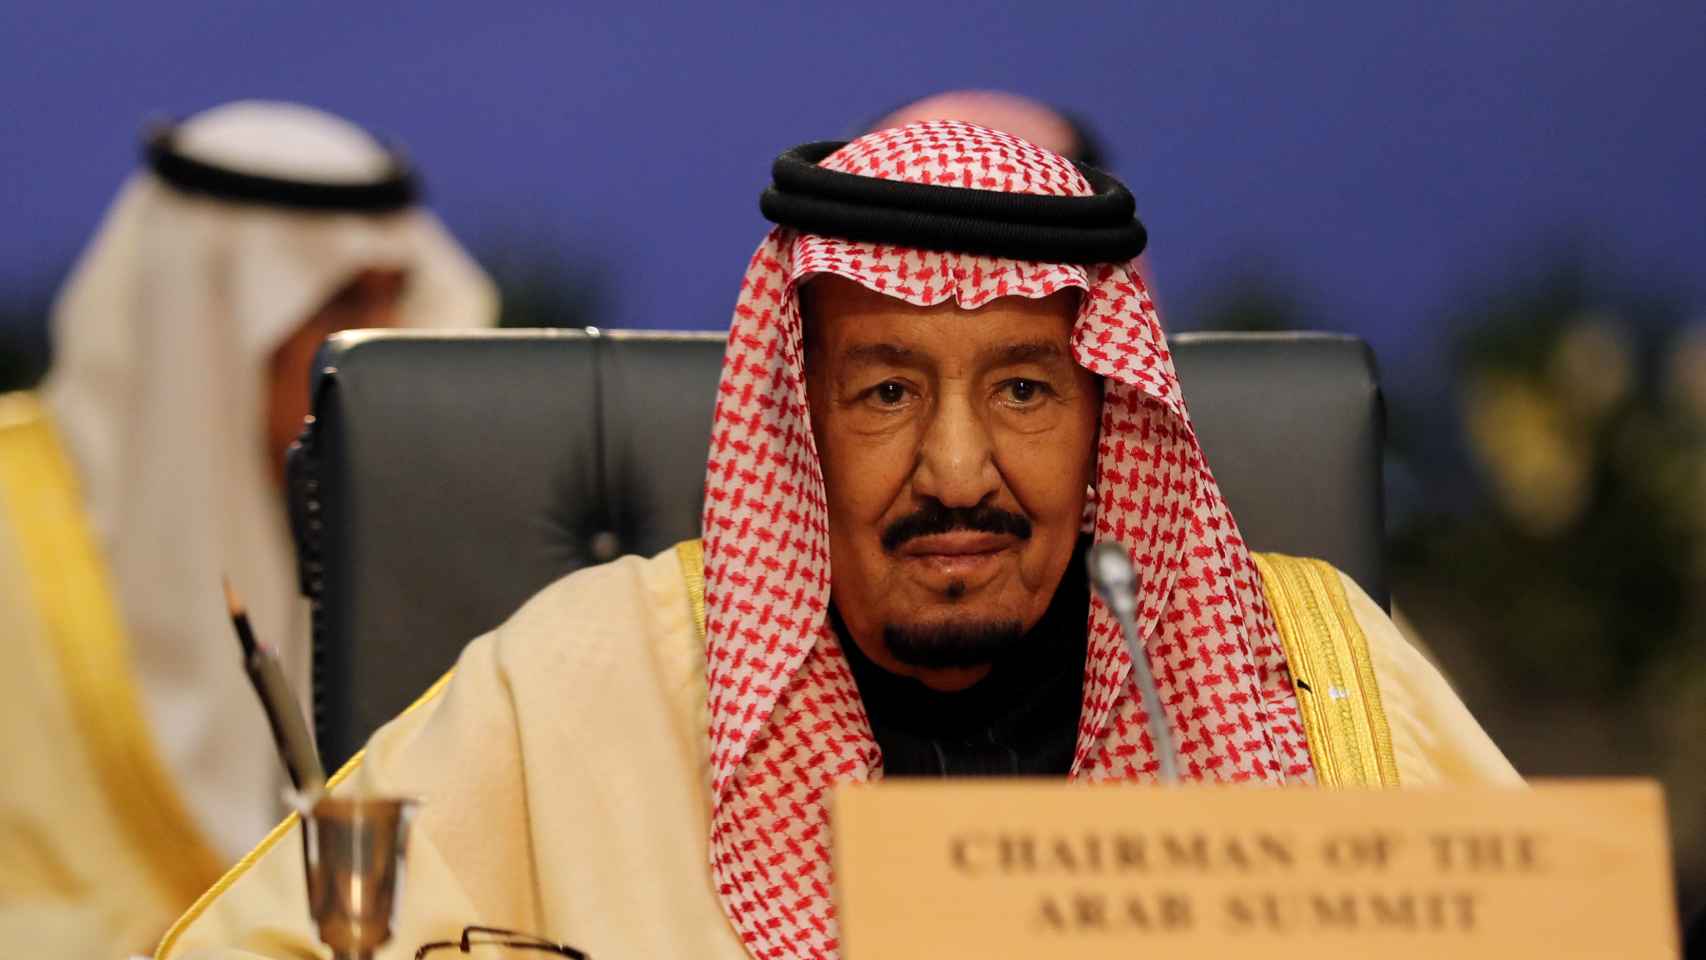 El rey de Arabia saudí Abdulaziz bin Salman.